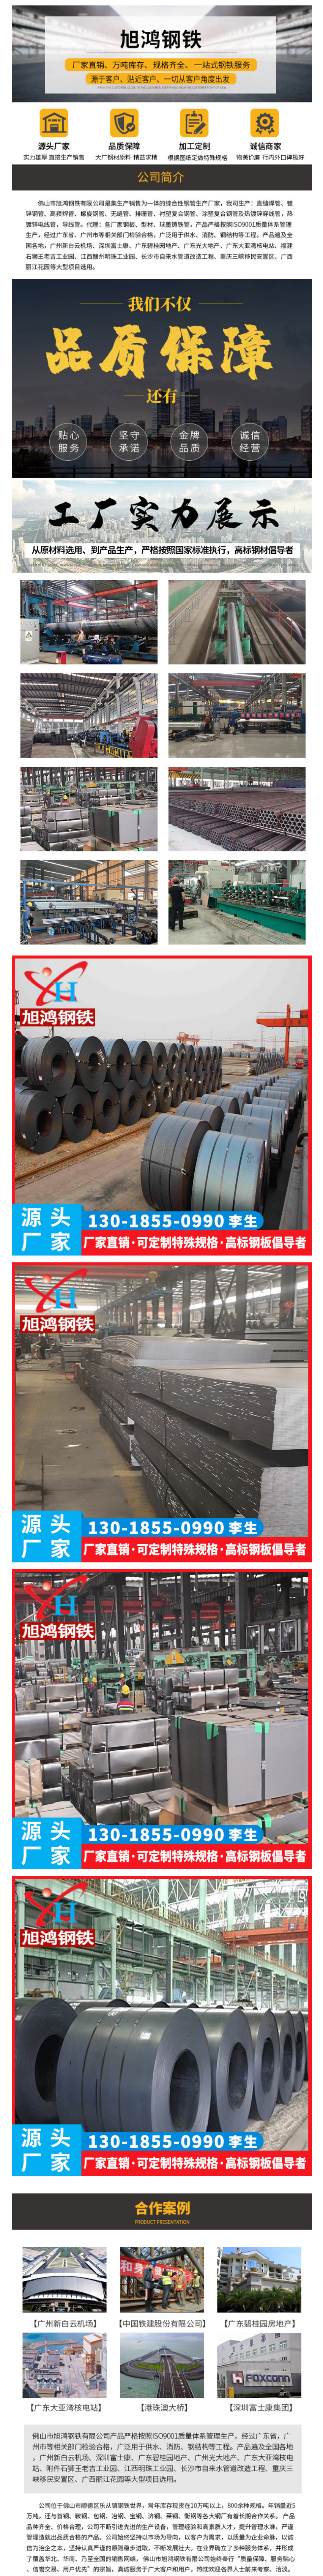 厂家批发q235热轧板卷 切割钢板 折弯定做各种规格现货优质开平板-阿里巴巴.png